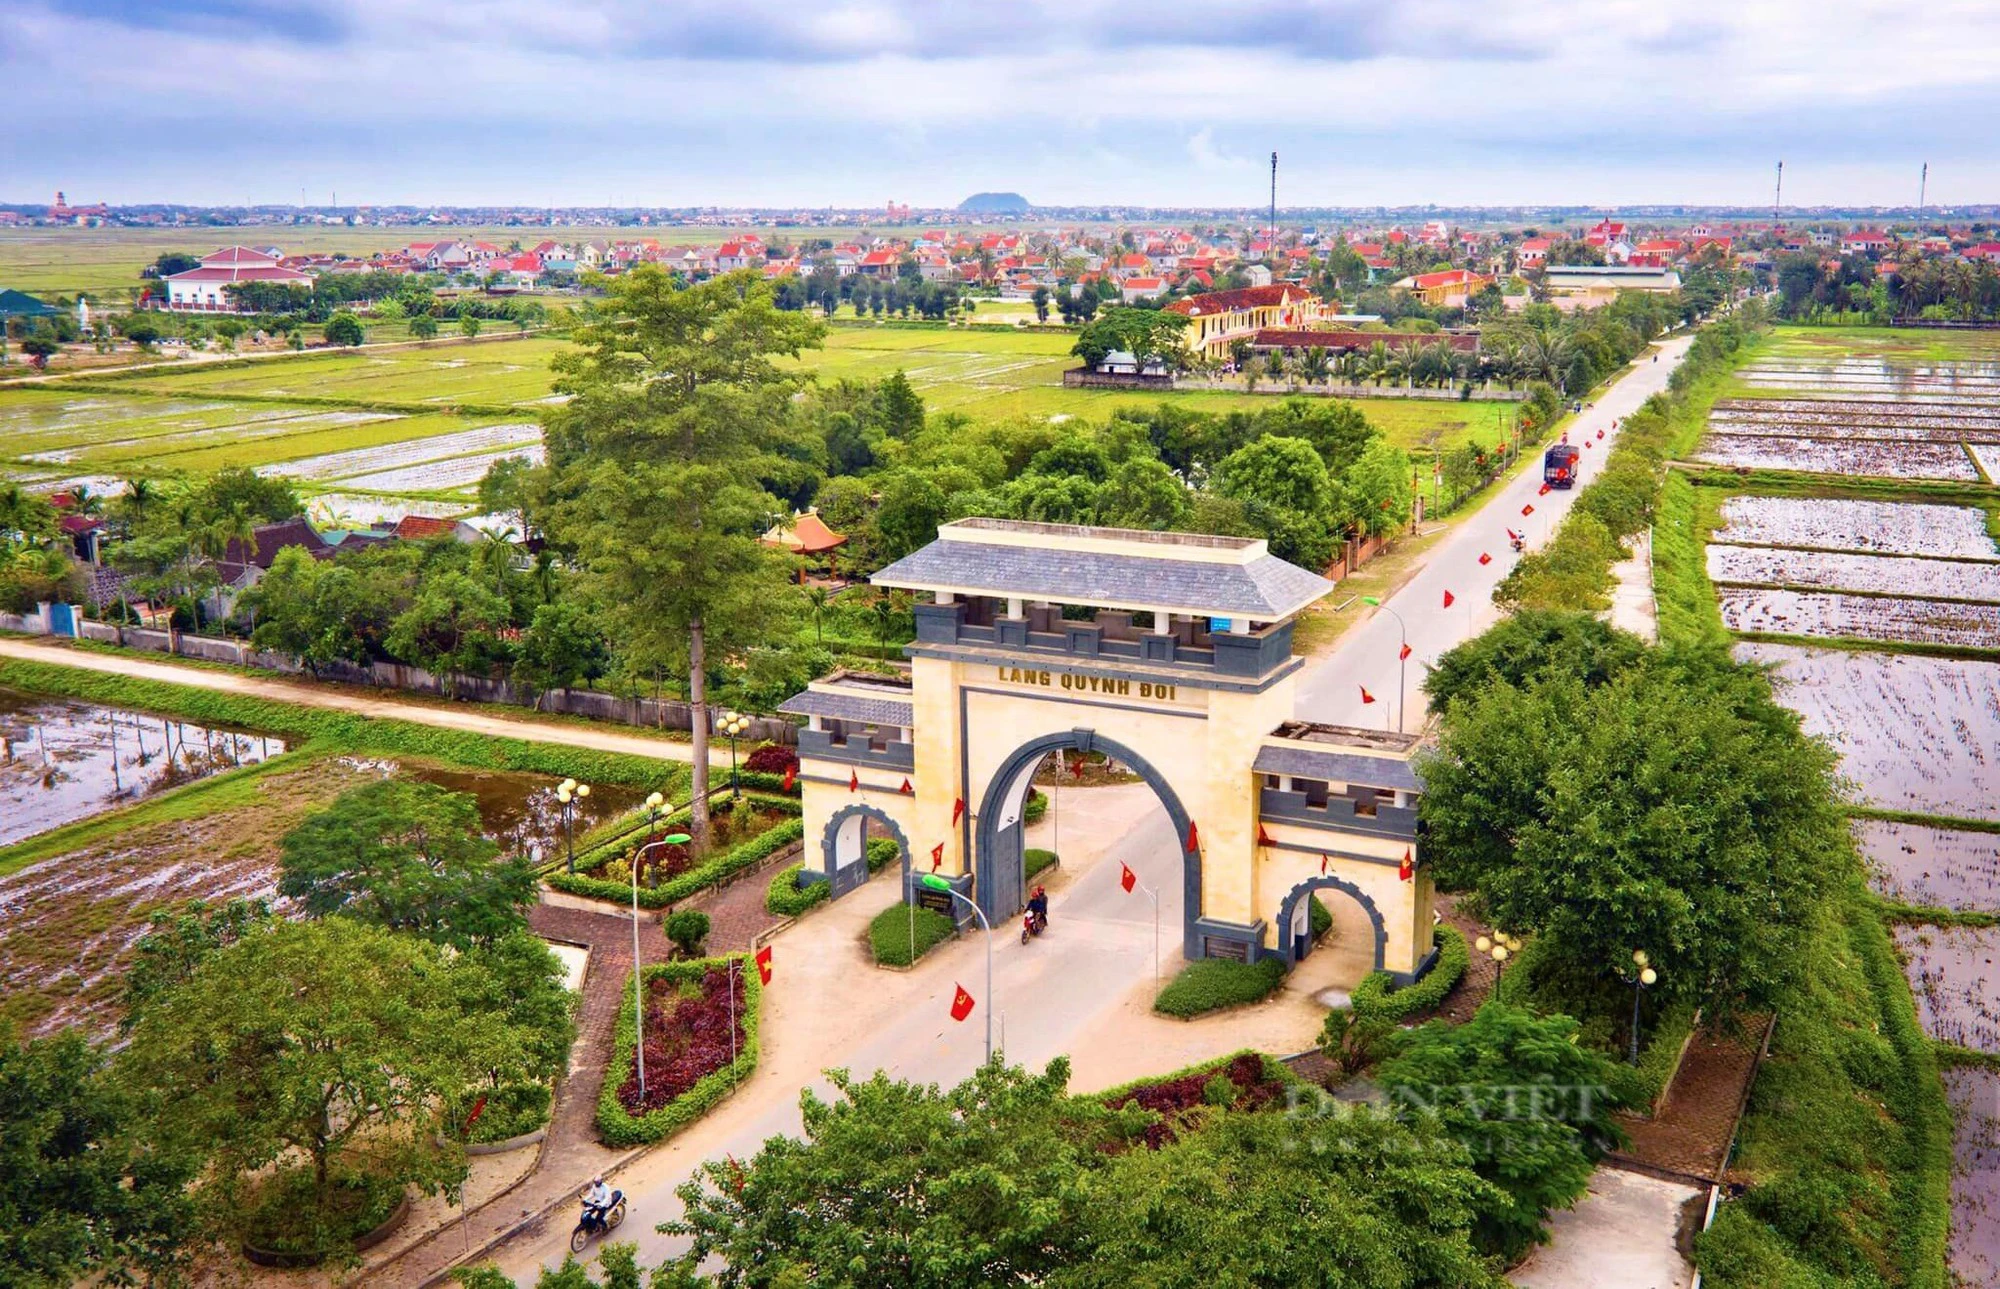 Xây dựng nông thôn mới ở Nghệ An: Làng quê đổi thay, huyện có thị trấn chuẩn đô thị thông minh - Ảnh 4.